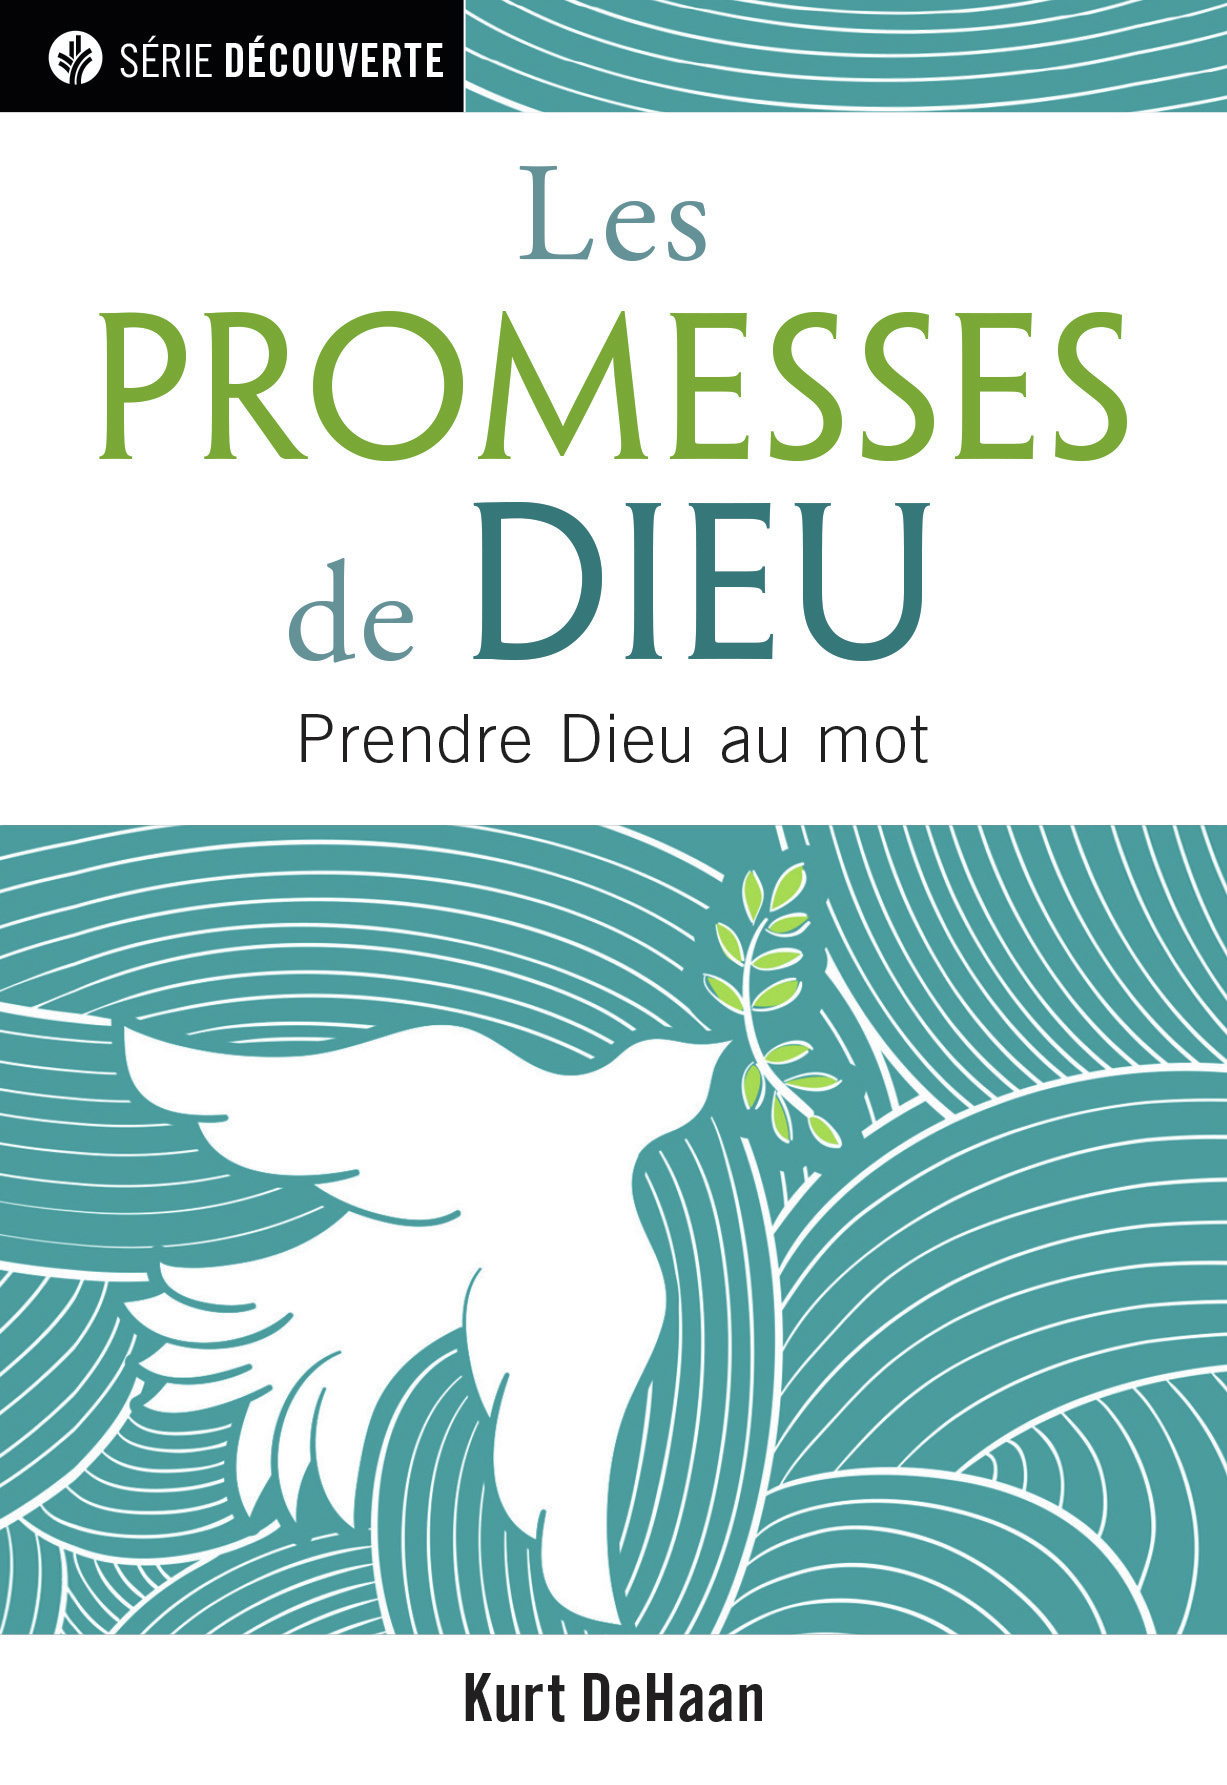 Promesses de Dieu [brochure NPQ série découverte] (Les) - Prendre Dieu au mot